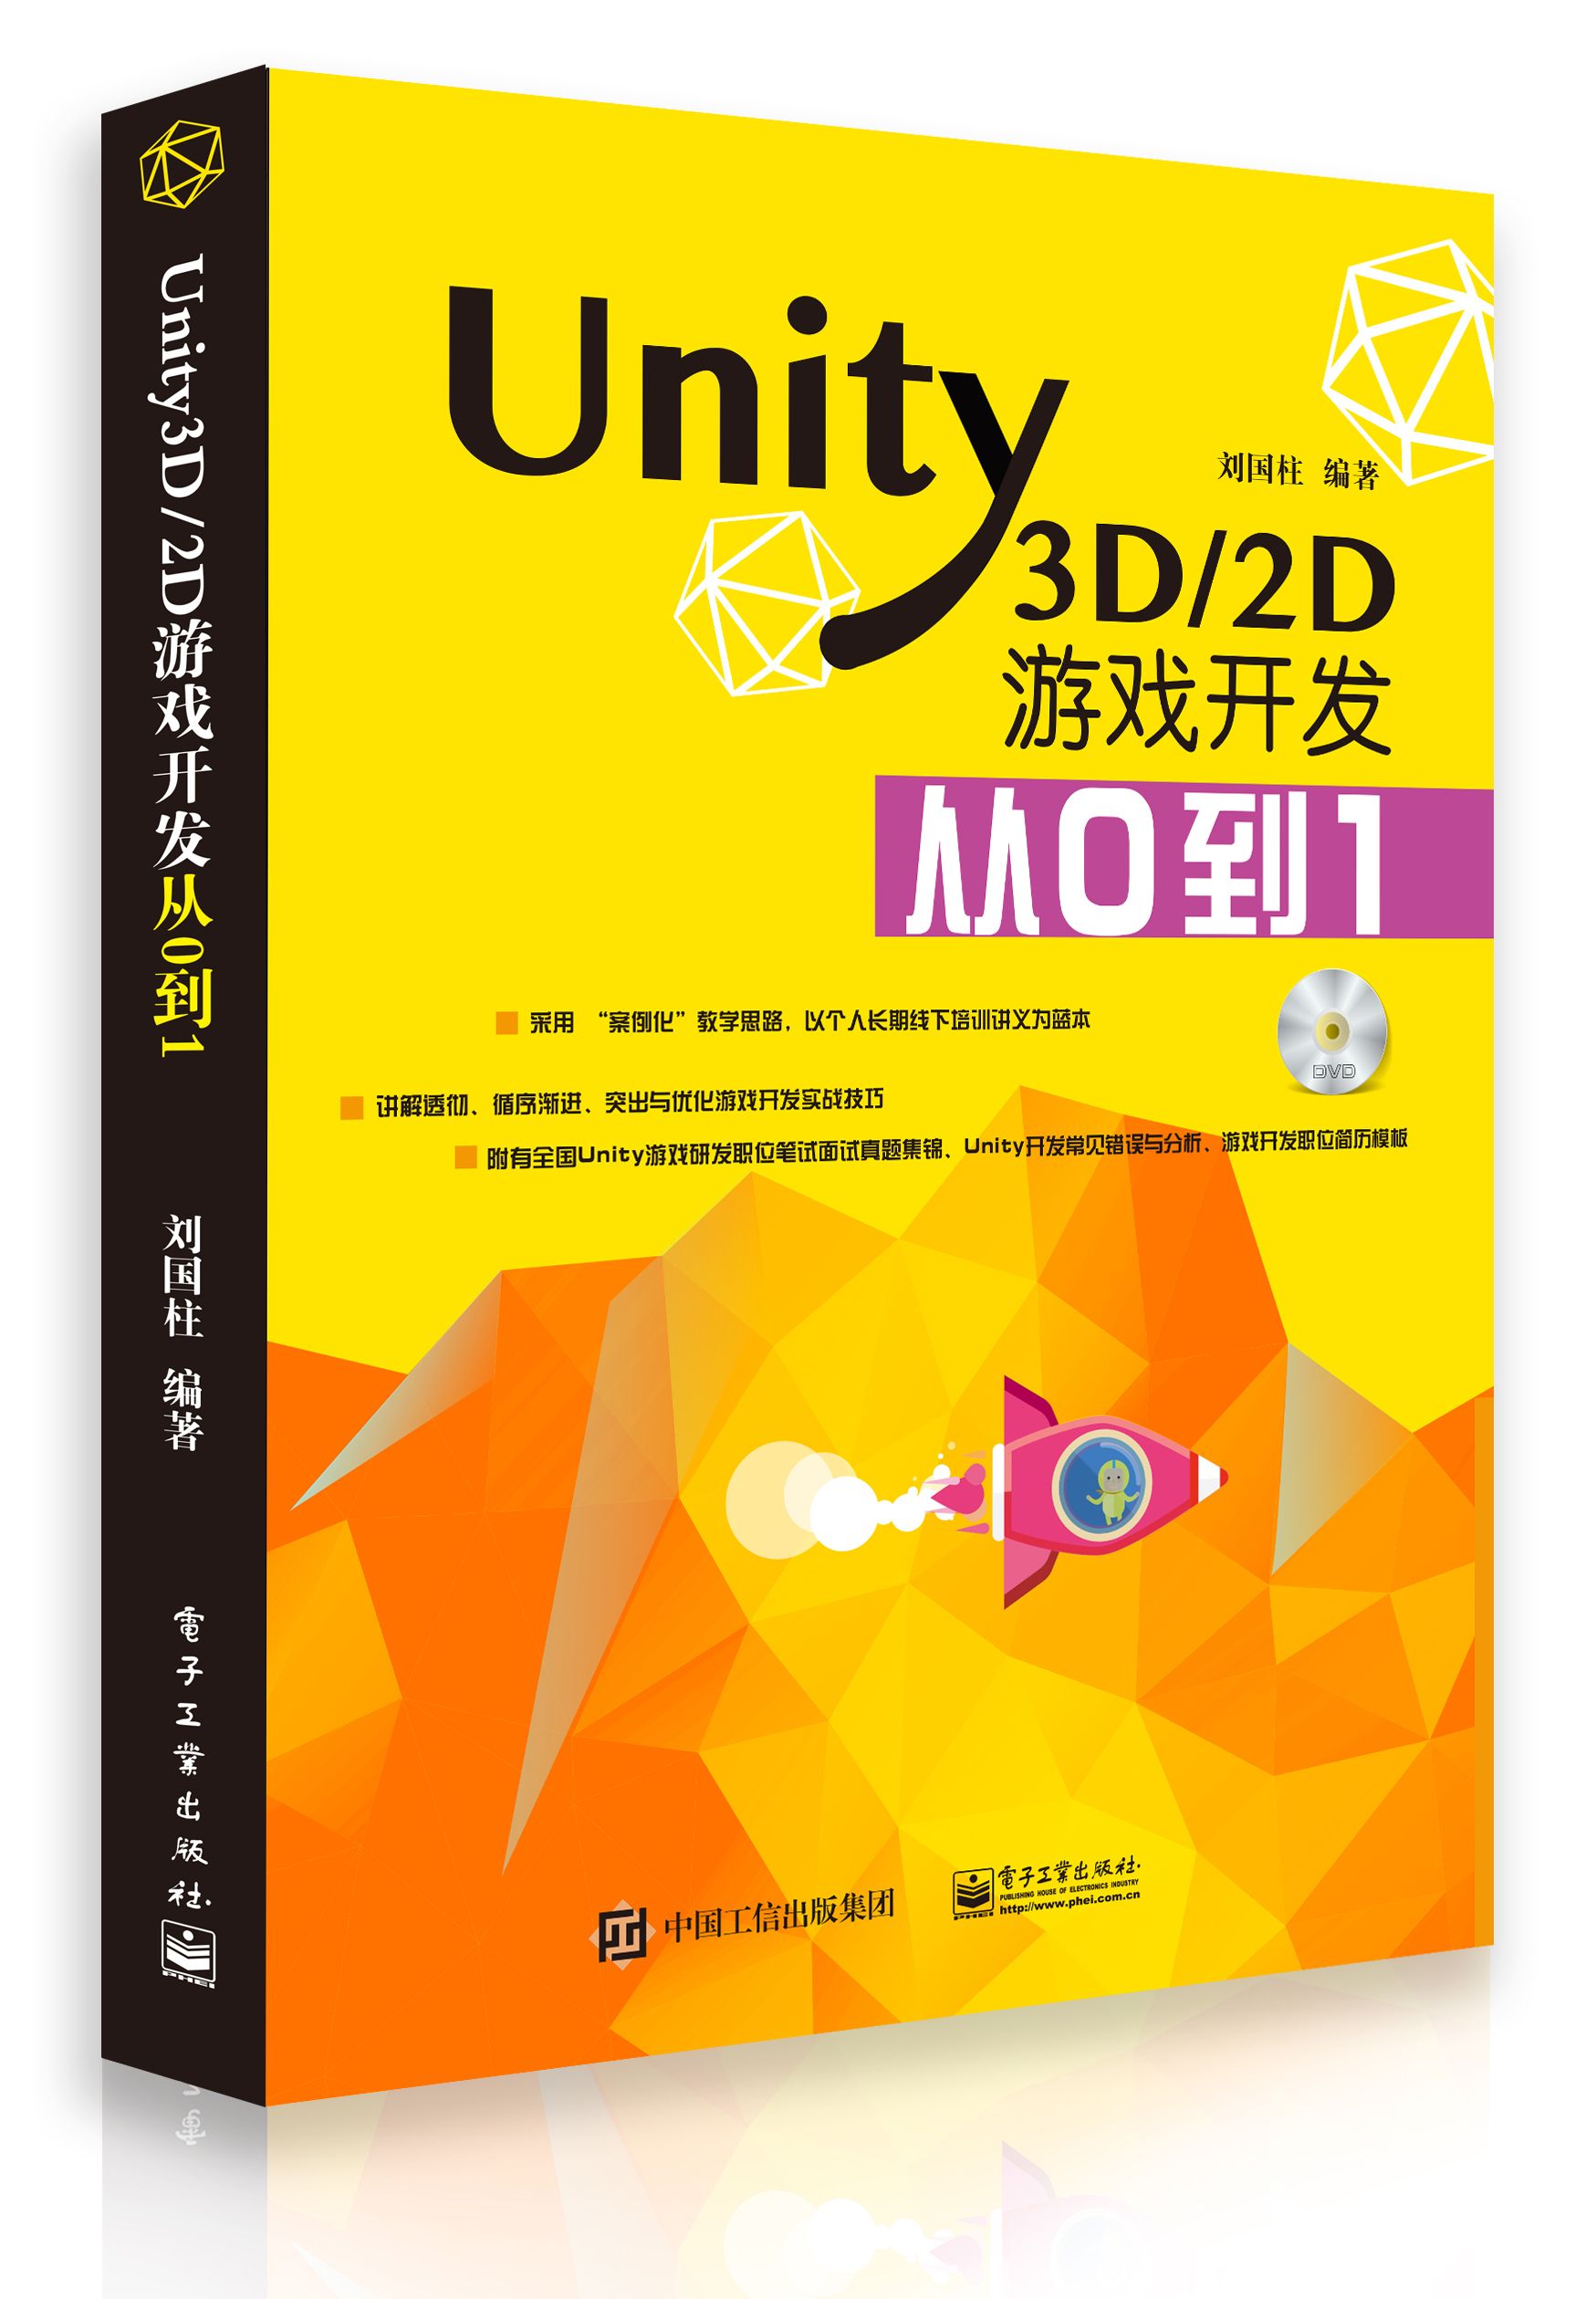 关于《Unity3D/2D游戏开发从0到1》书籍再版说明_Unity2017教学书籍